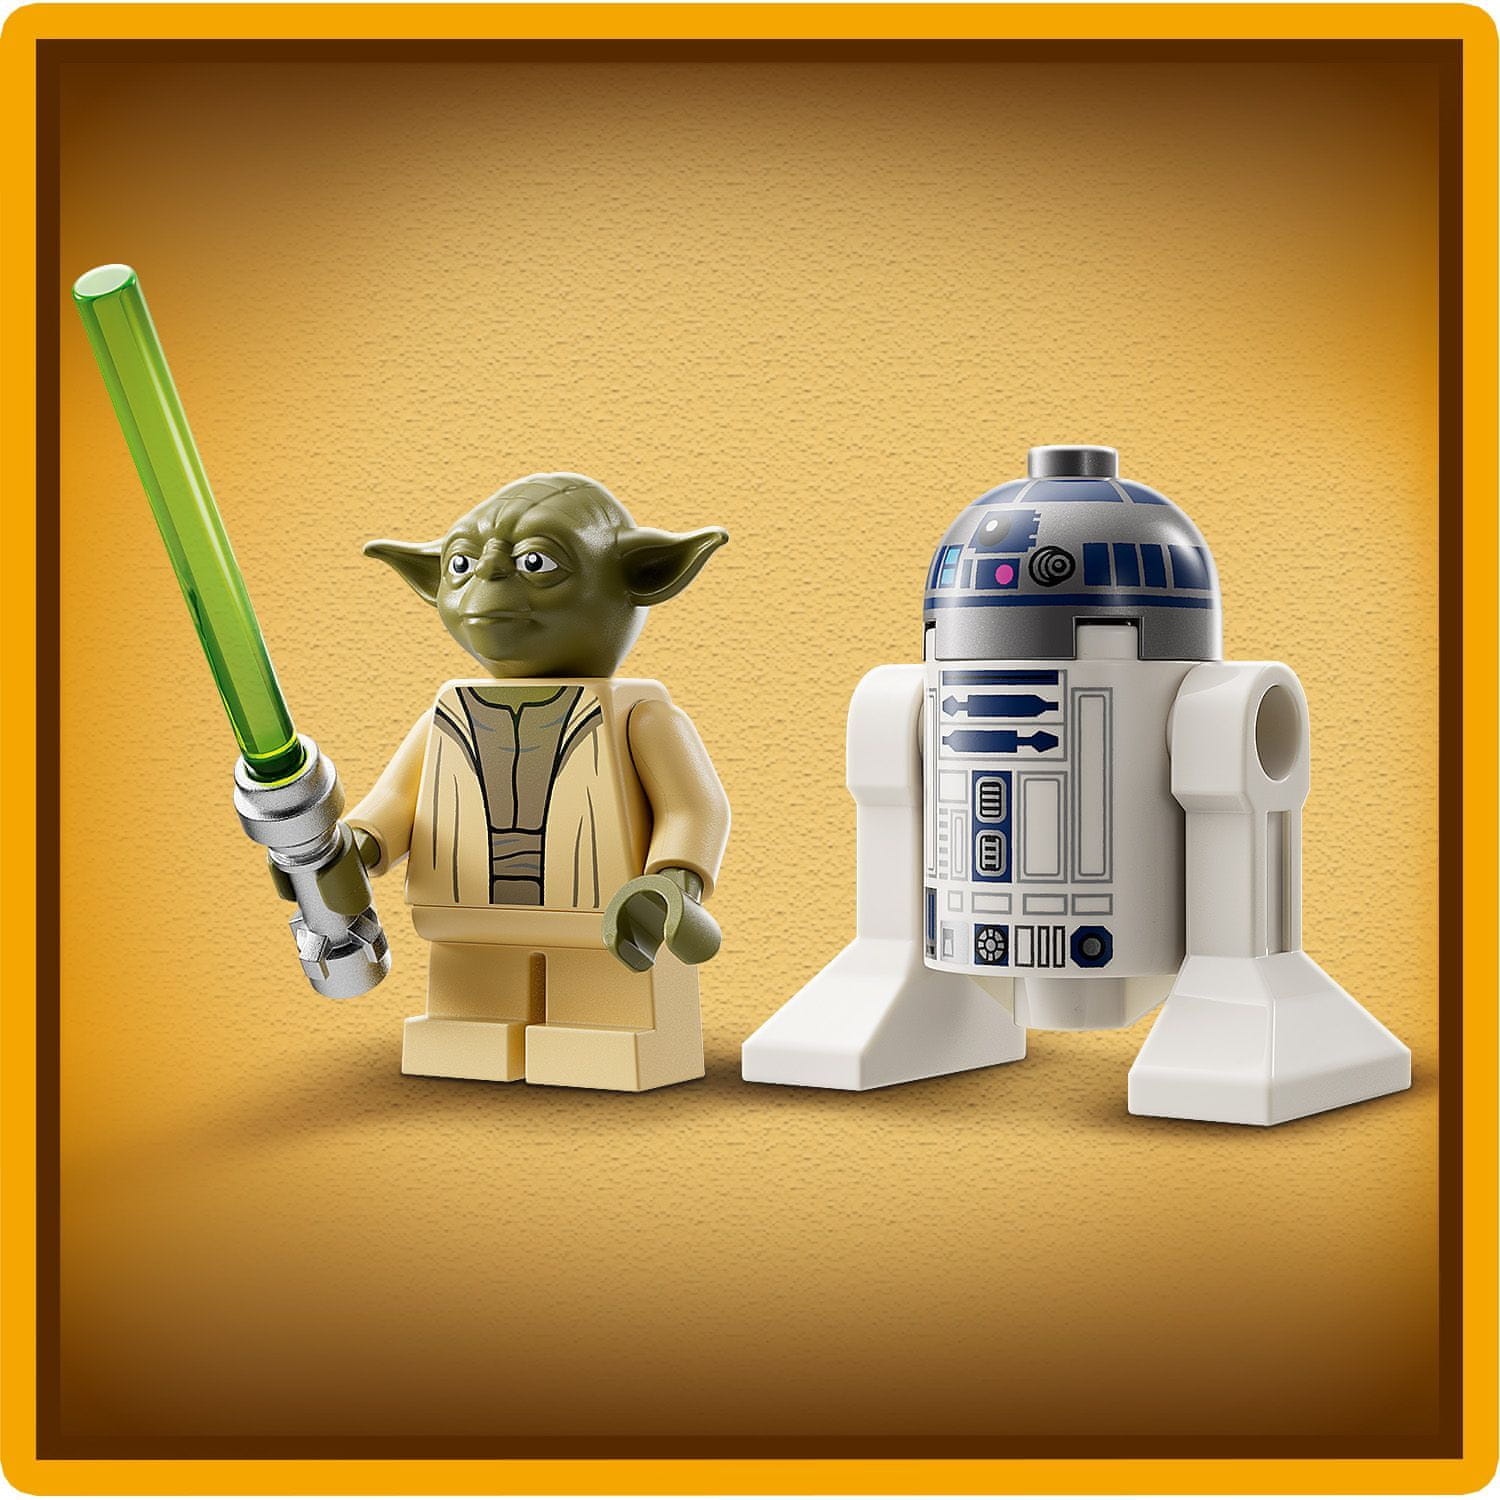 LEGO Star Wars 75360 Yodova jediská stíhačka